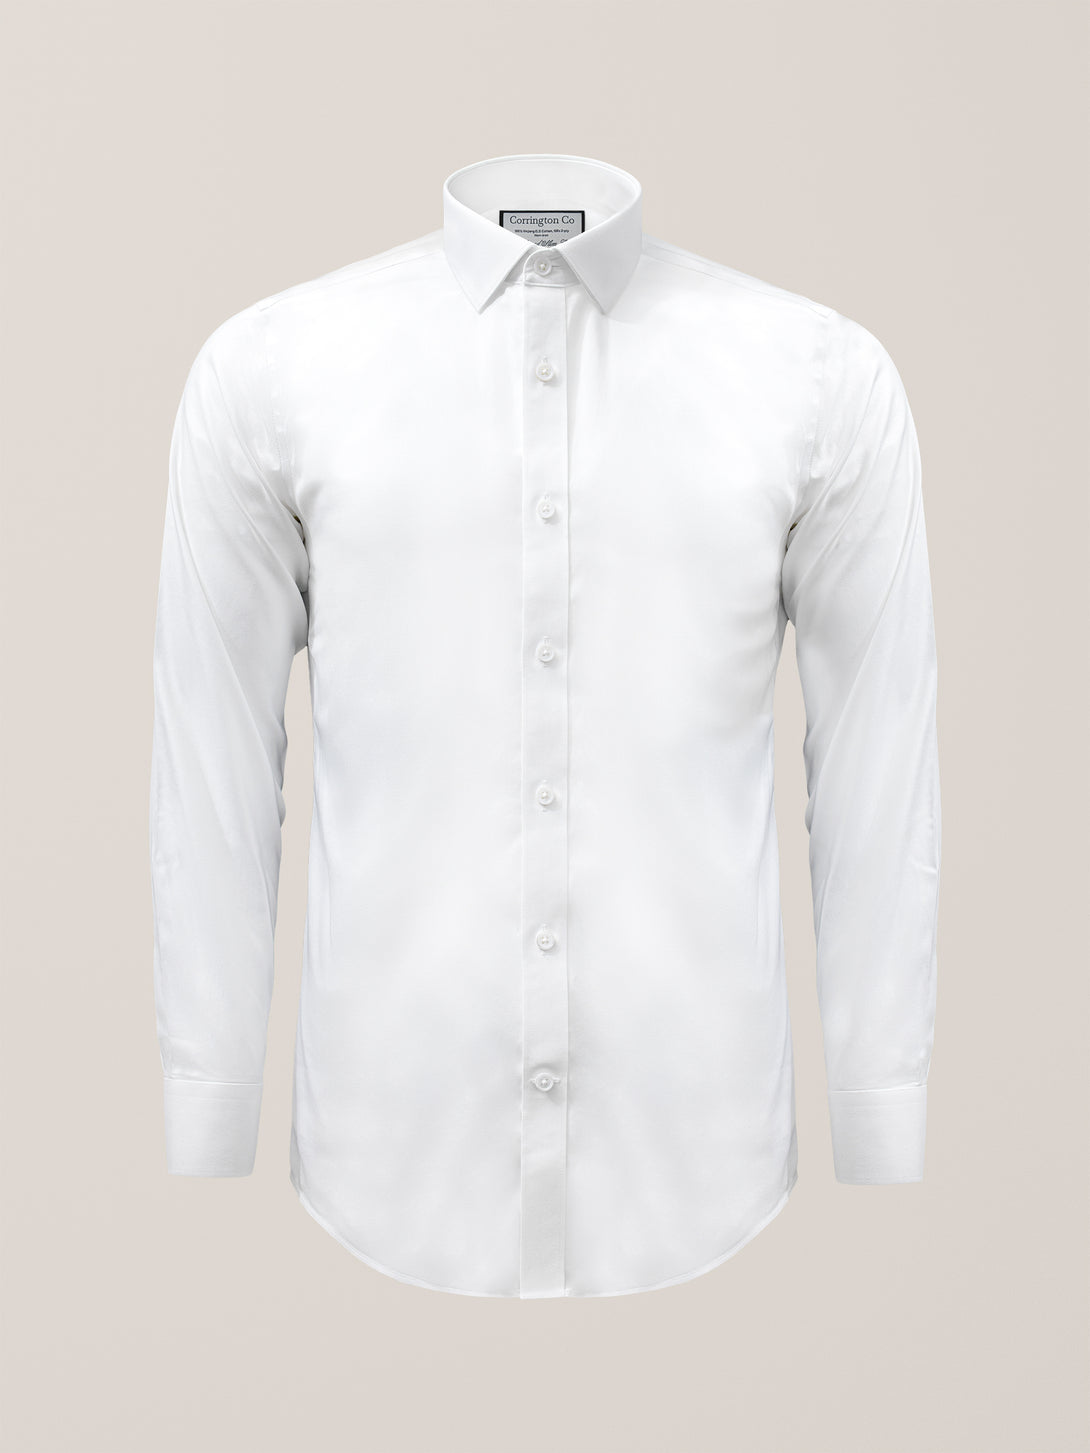 White Non-Iron Twill Shirt | Corrington Co